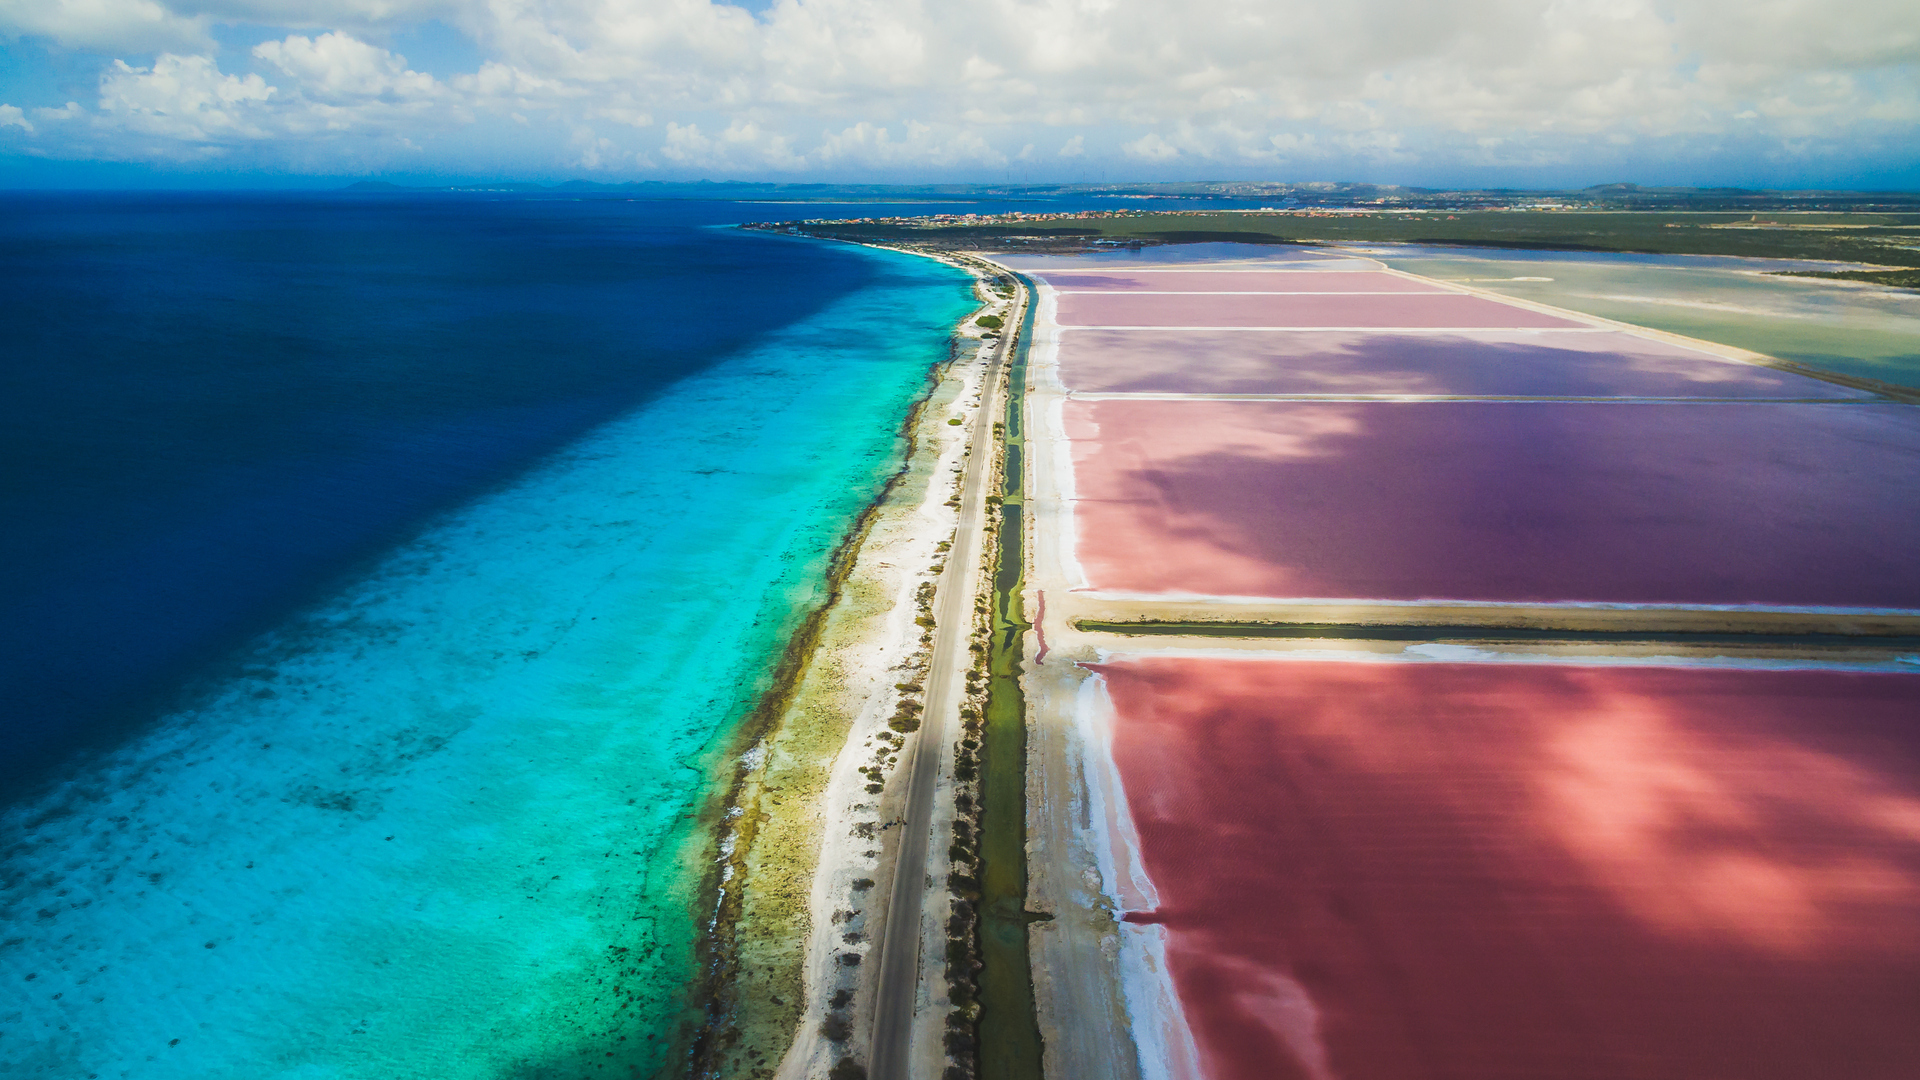 Vía que separa el agua rosada salina con las aguas turquesa